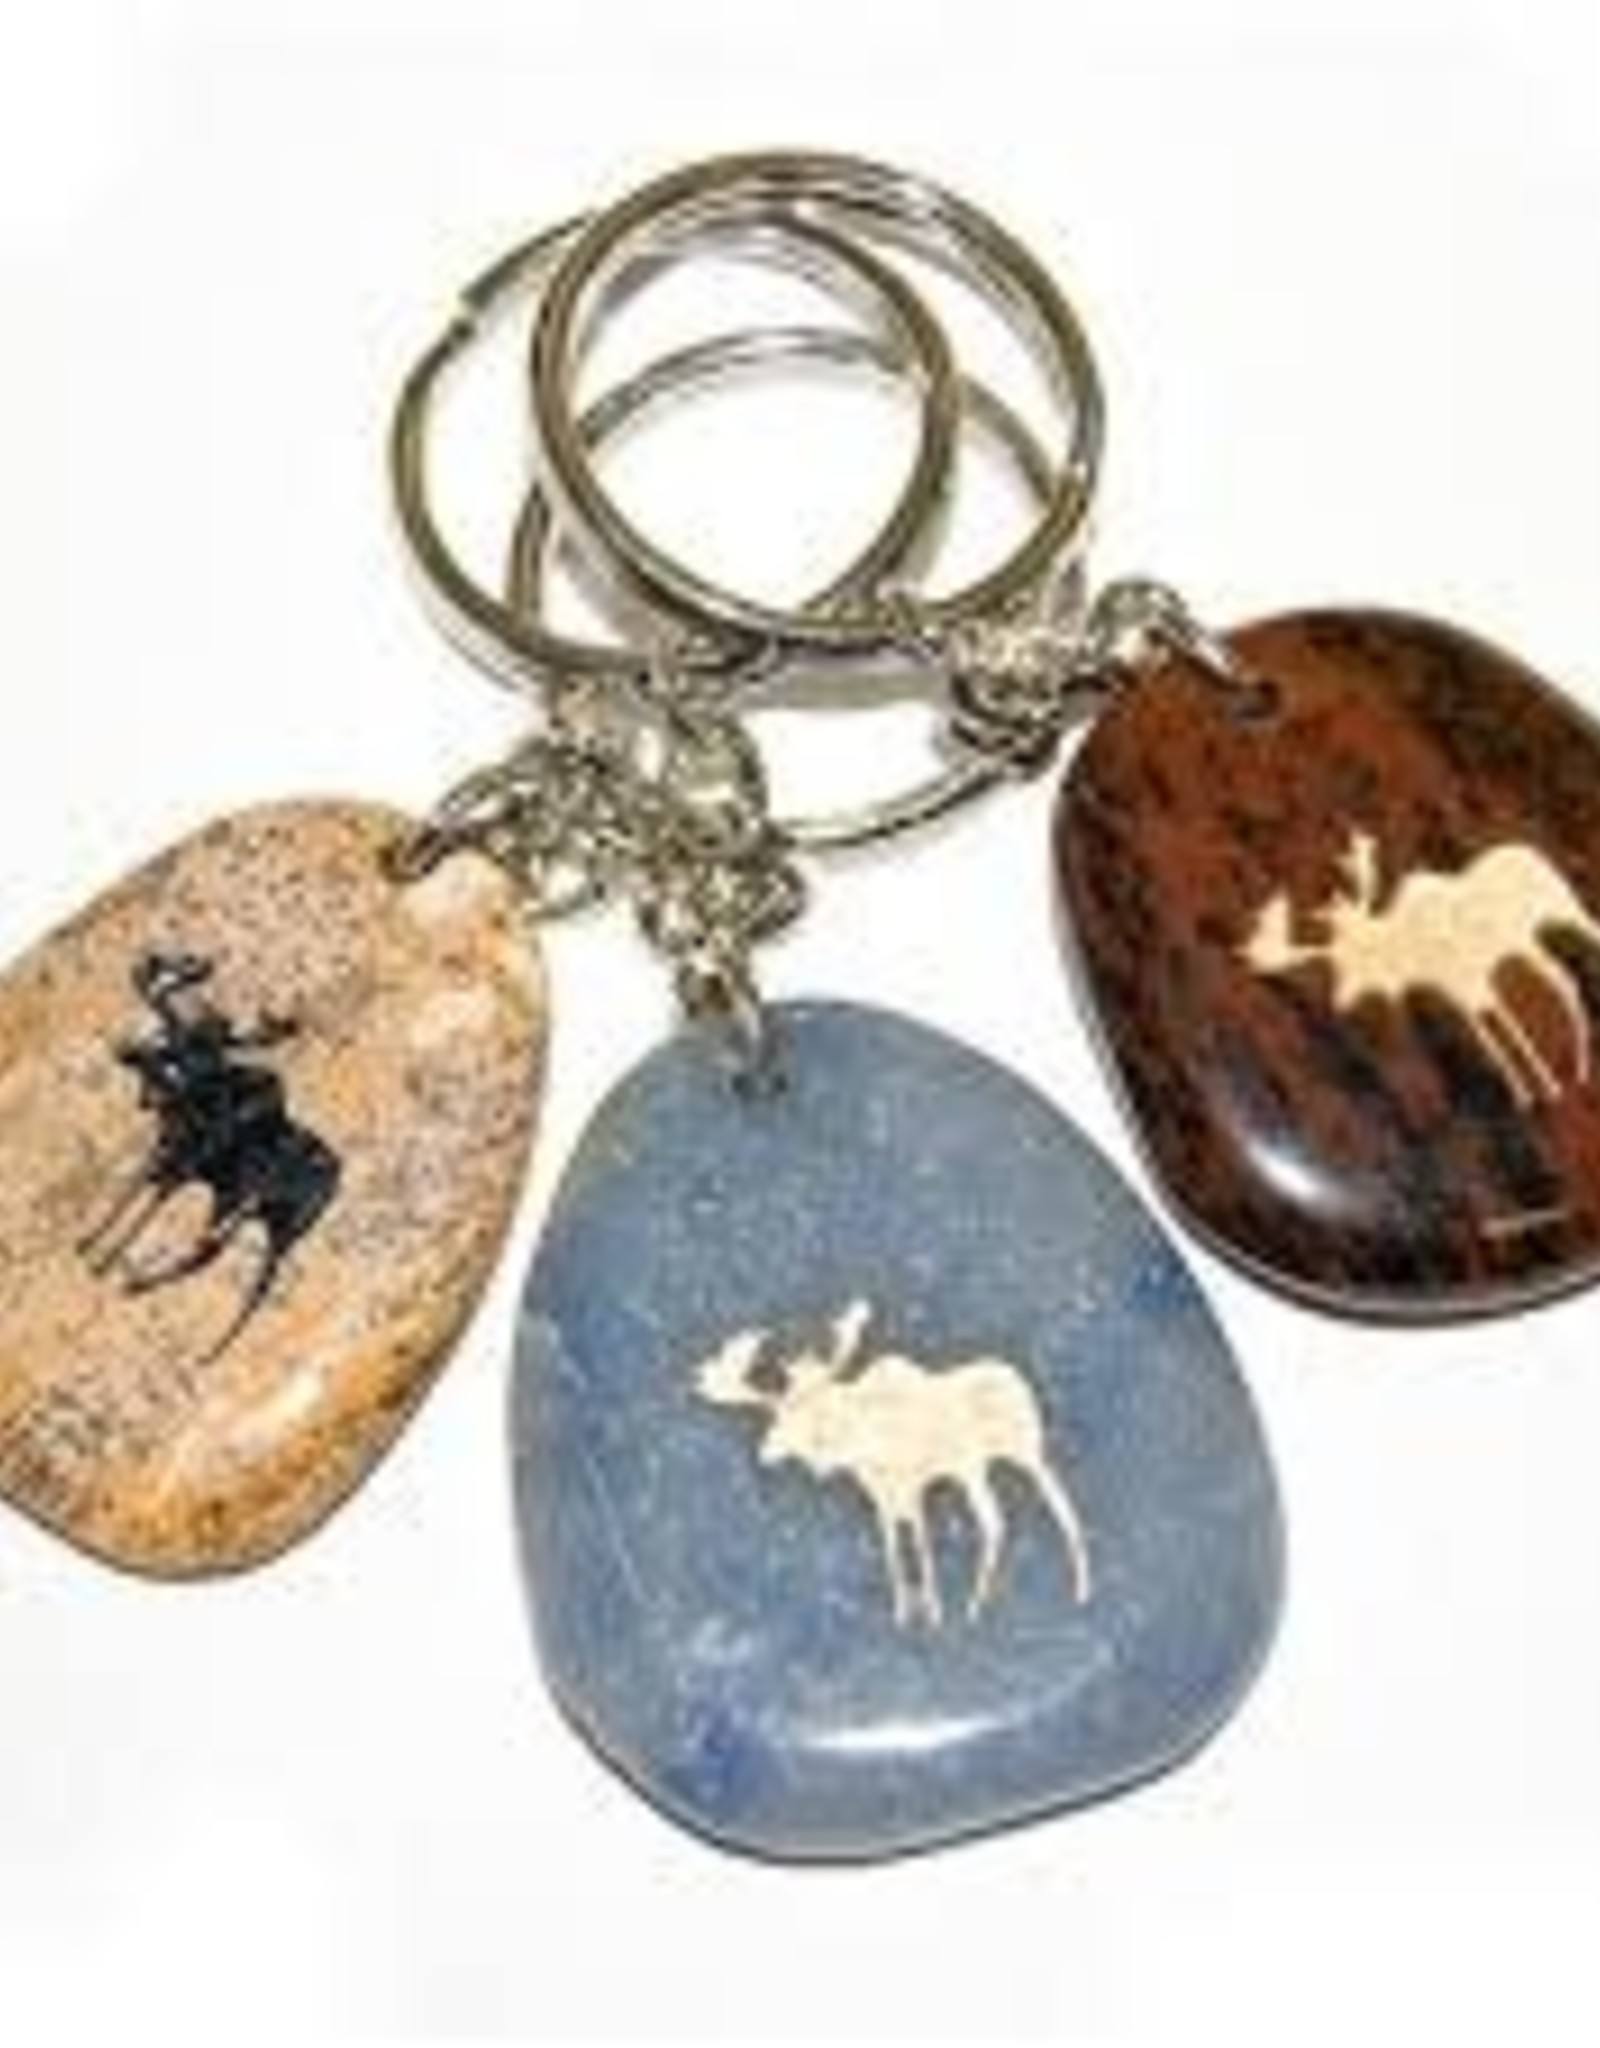 Stone Keychains - Moose